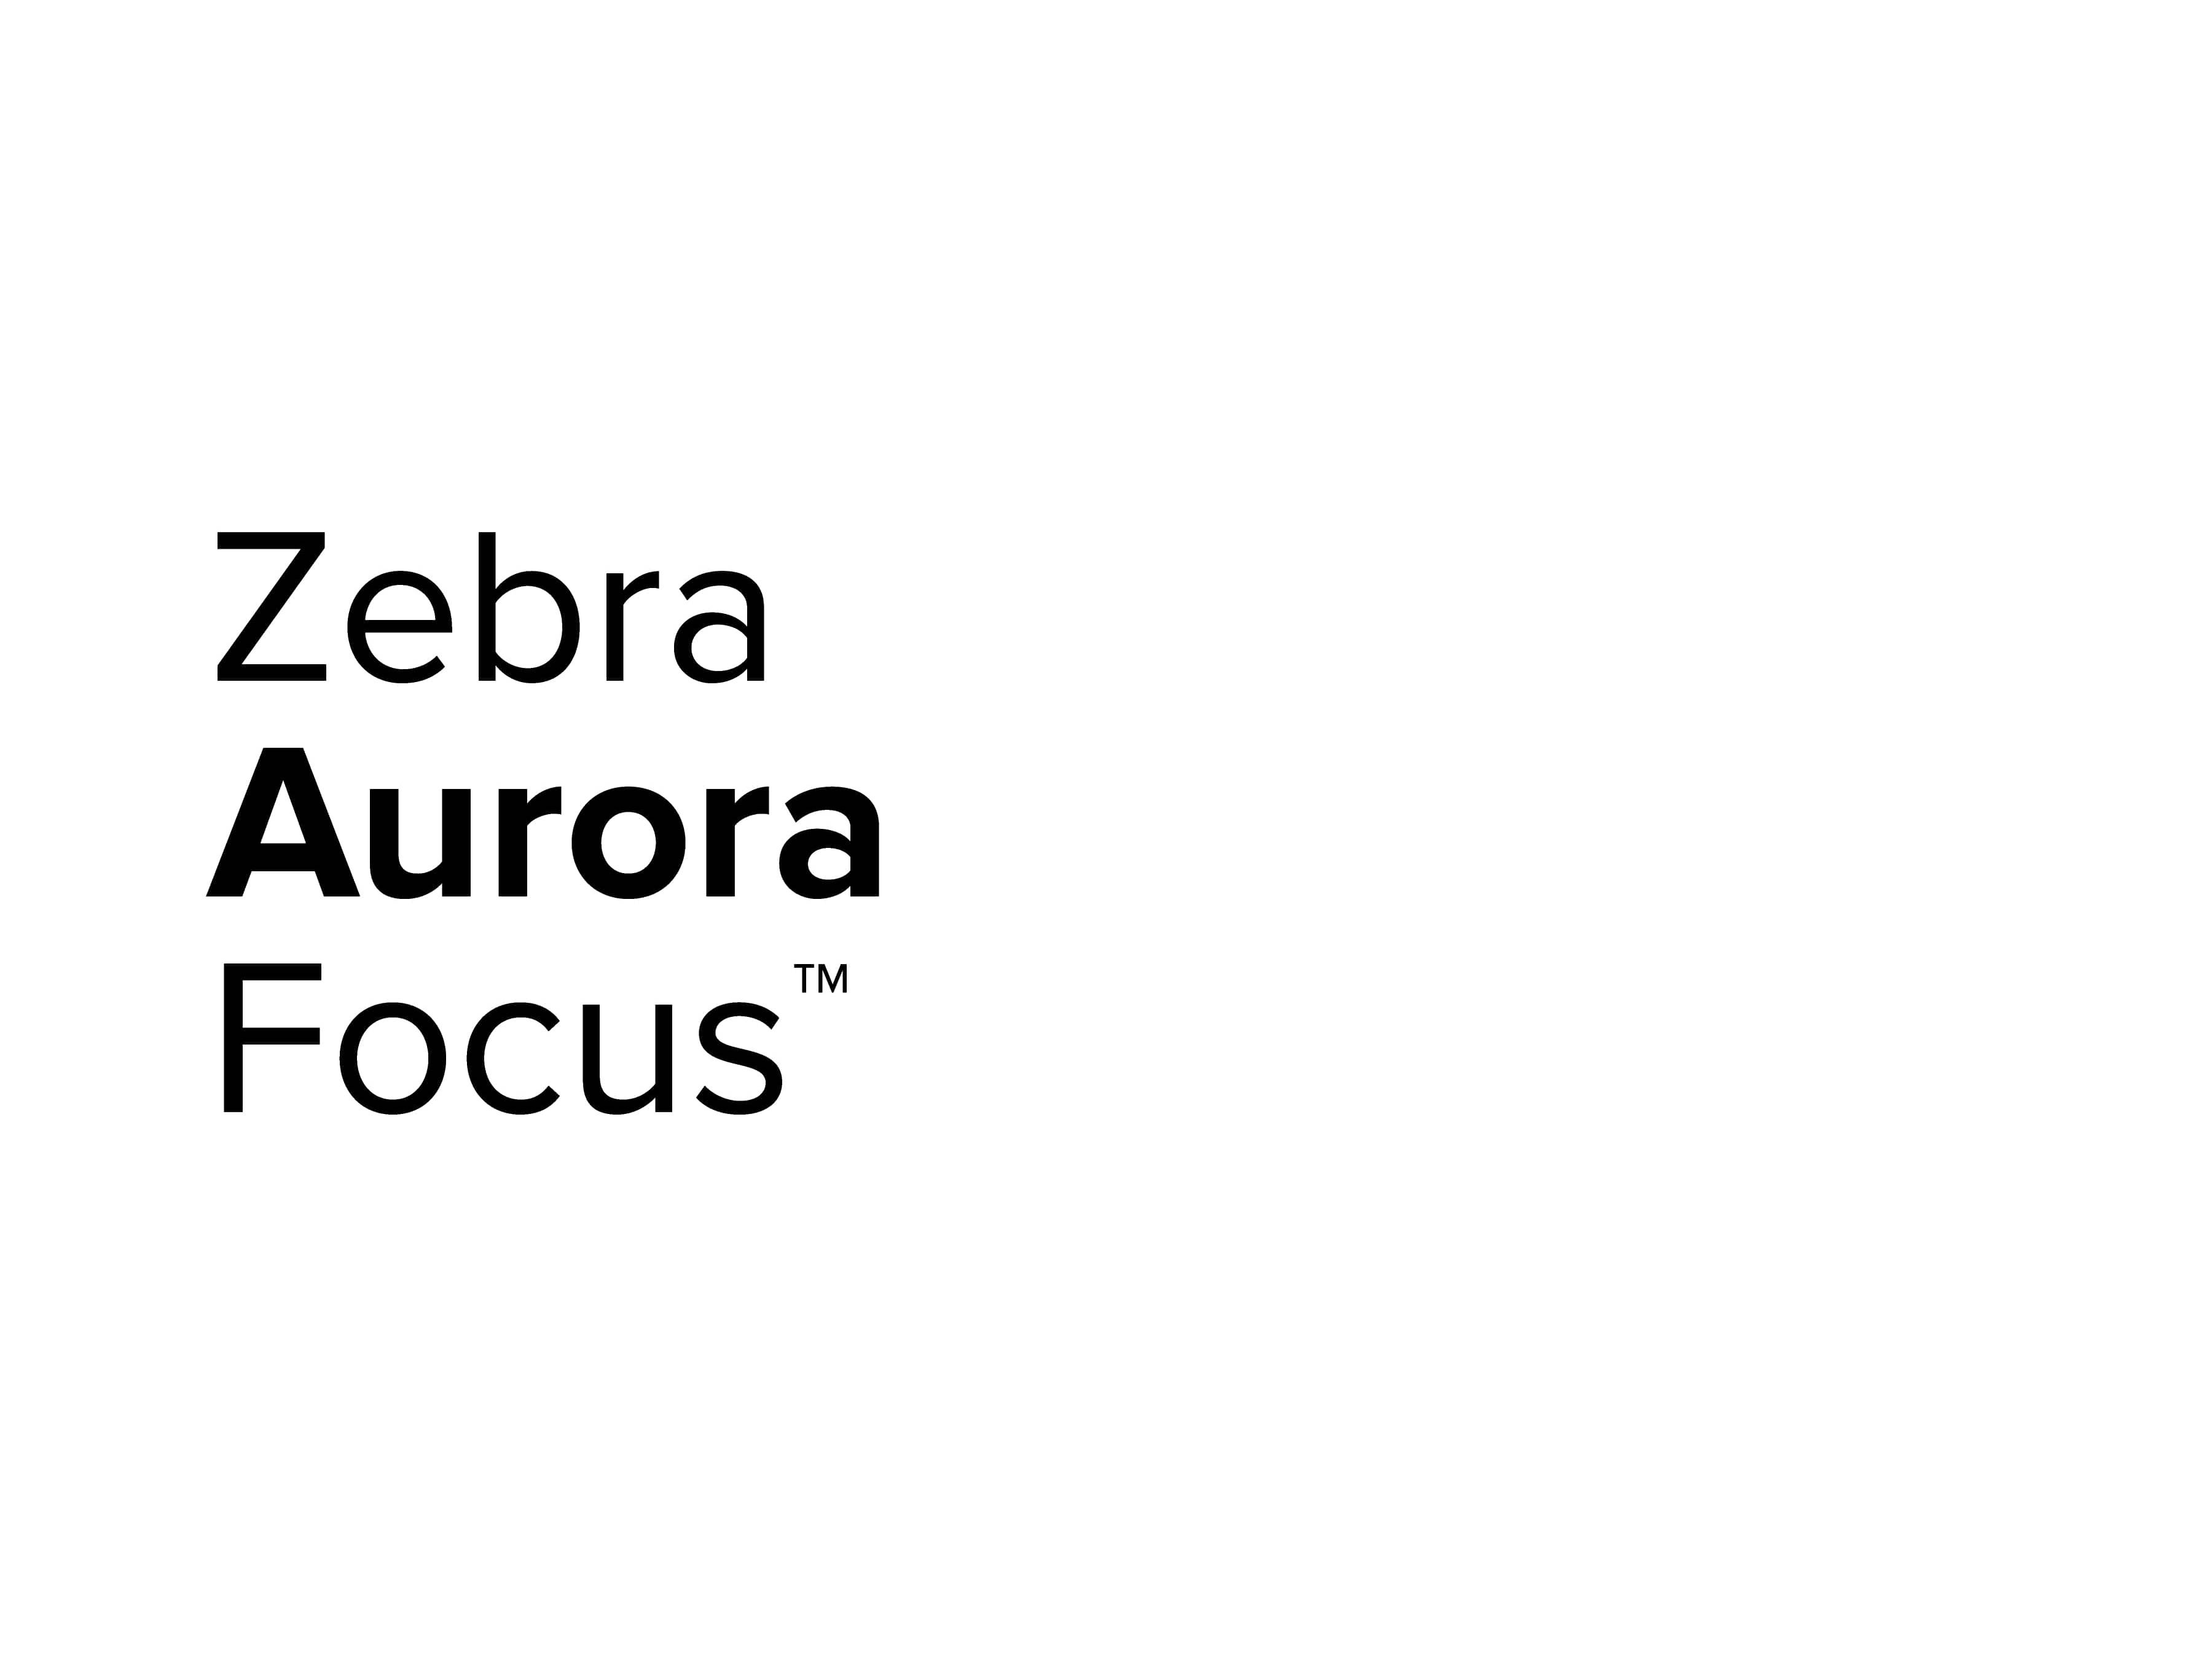 Zebra Aurora Focus Logosu